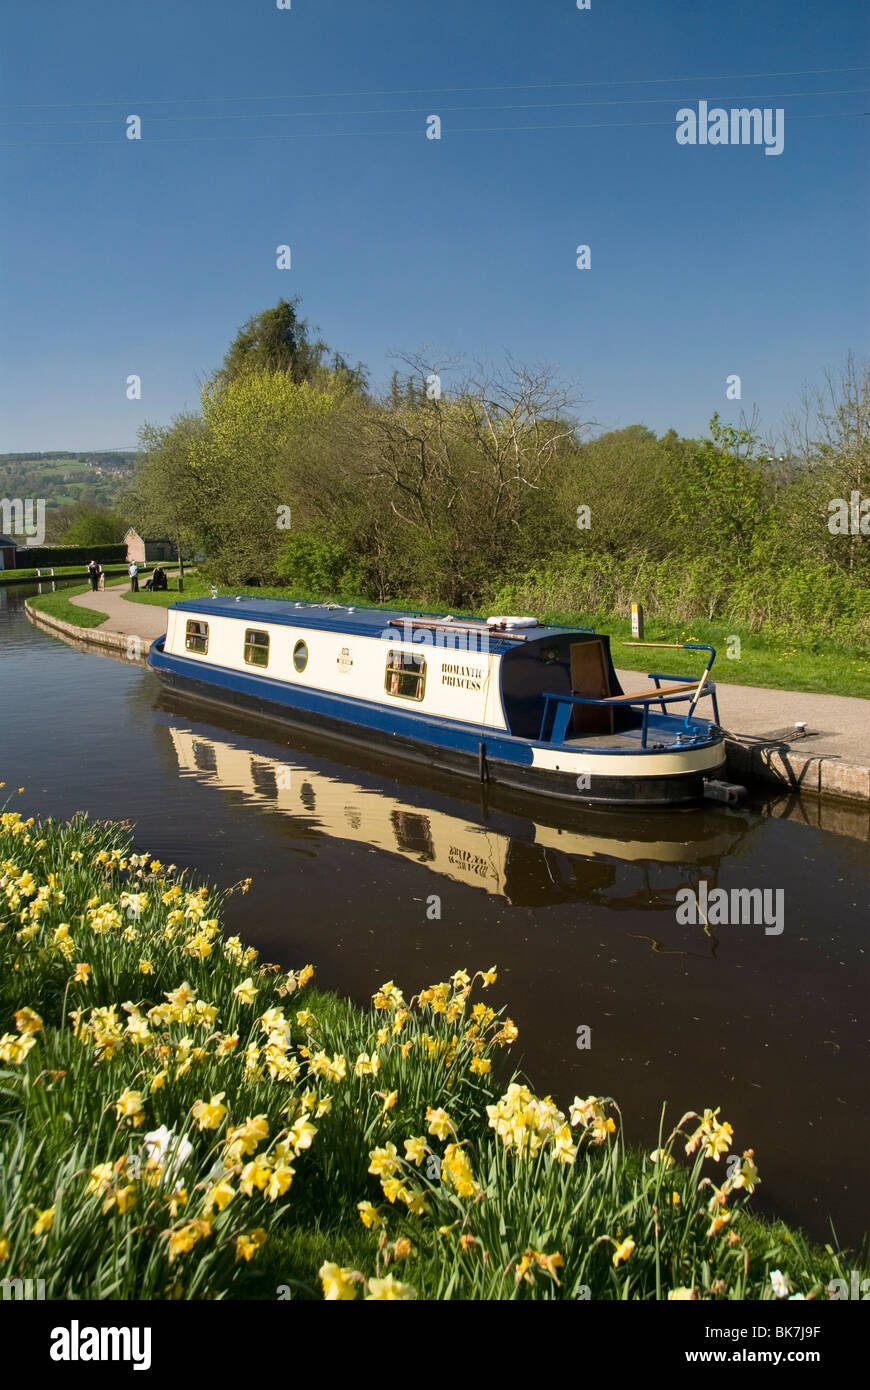 La location bateau étroit, sentier du canal de Llangollen, Pays de Galles, Royaume-Uni, Europe Banque D'Images